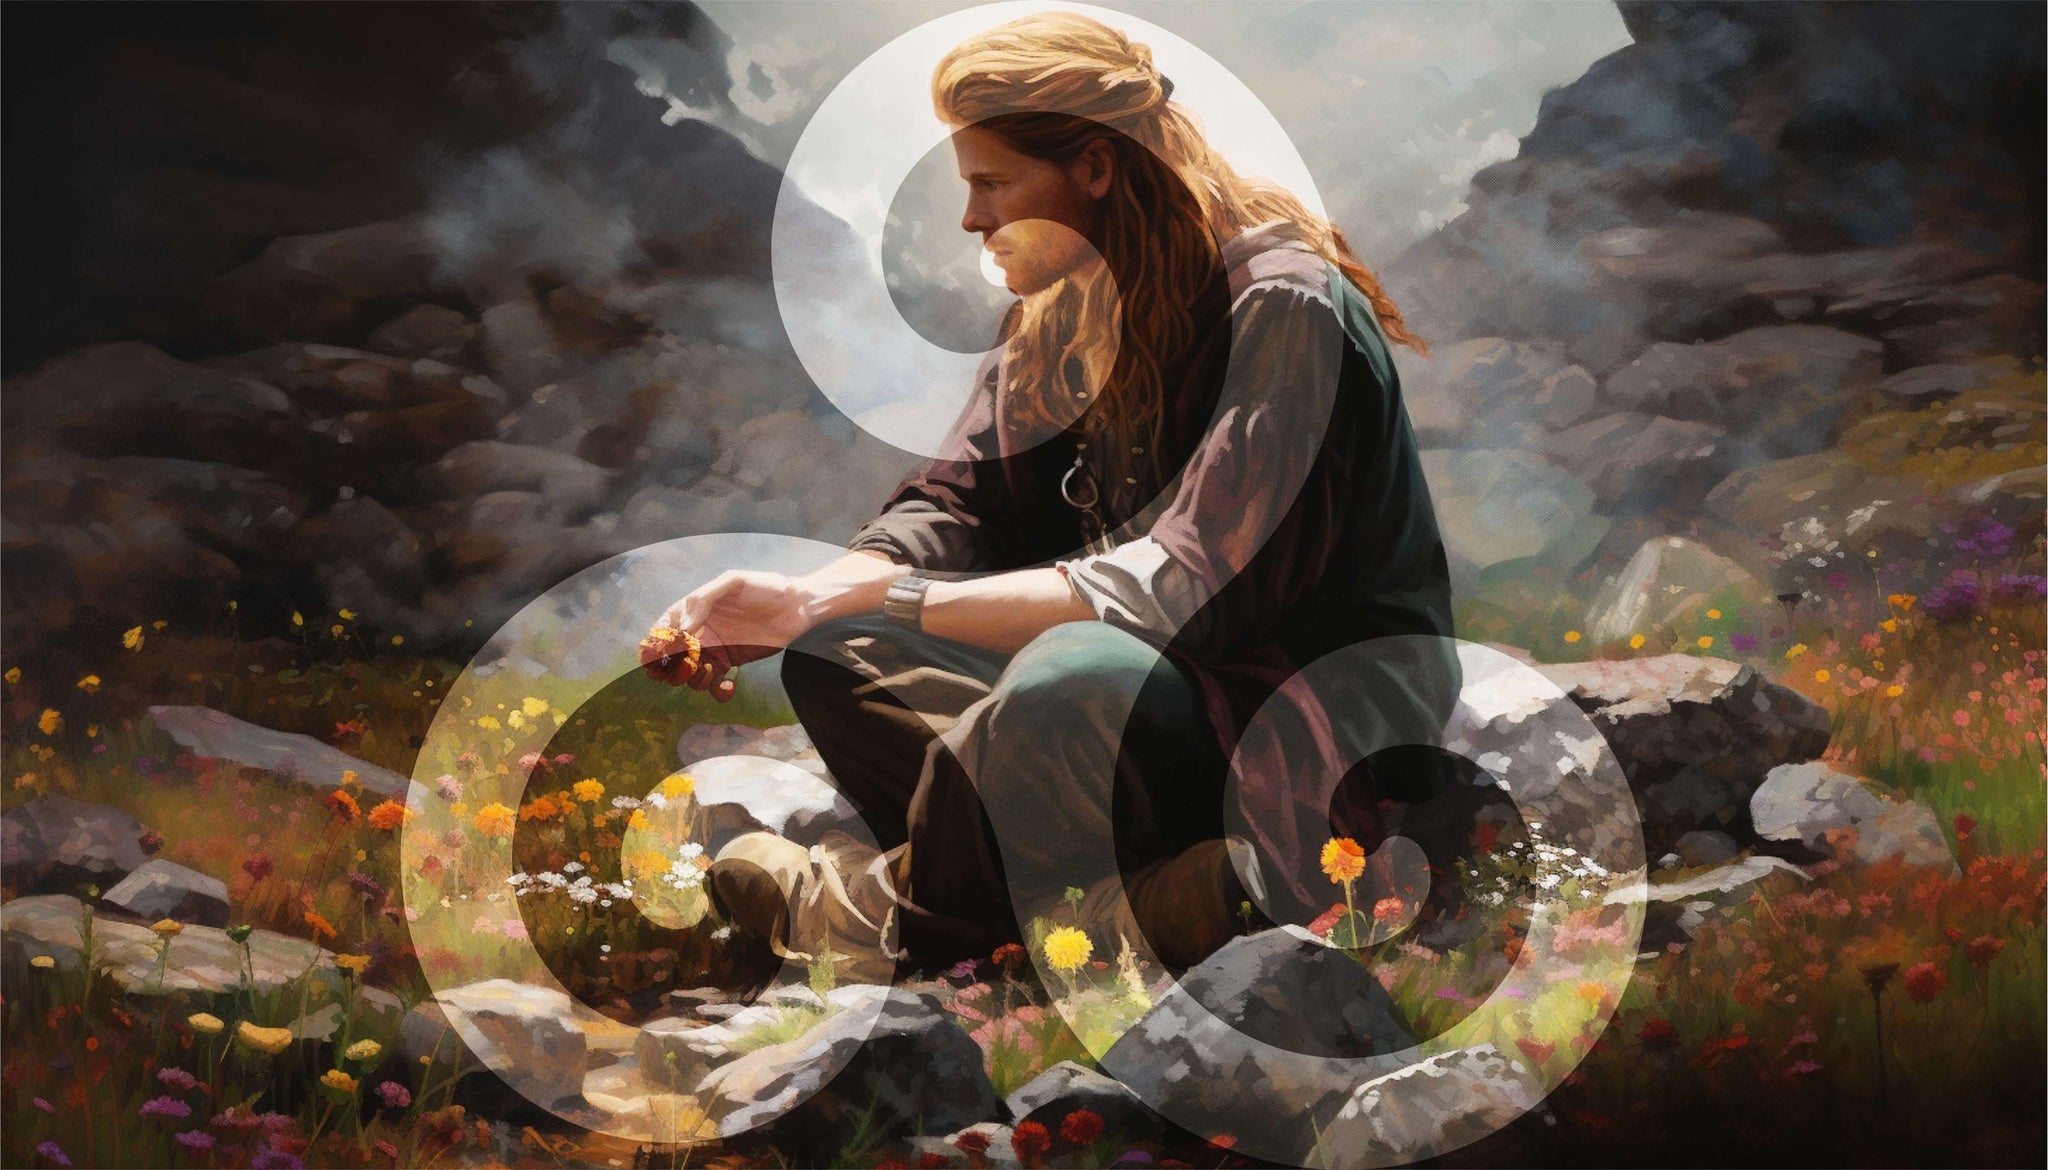 jeune celte au pied du menhir sur lequel est gravé le symbole du triskel celte, hume les fleurs alentour